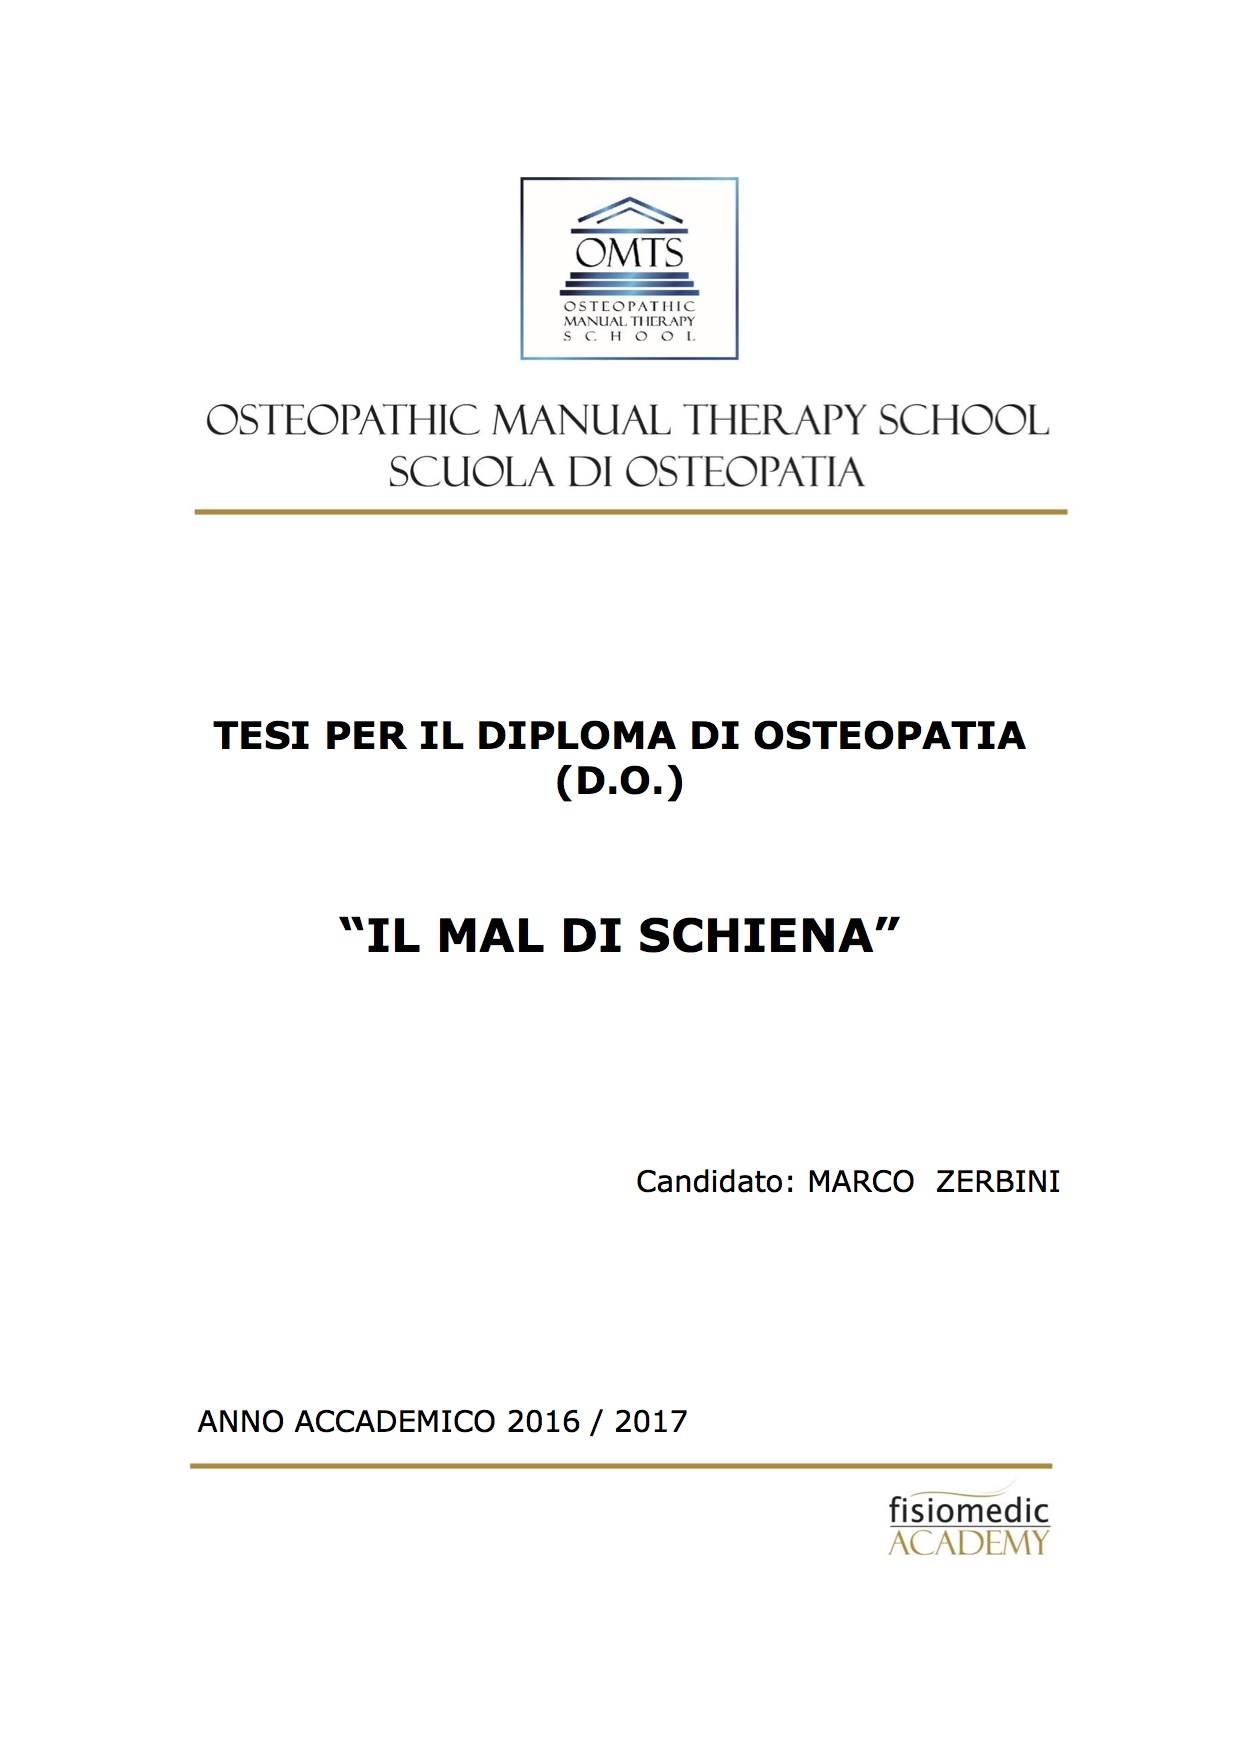 Marco Zerbini Tesi Diploma Osteopatia 2017